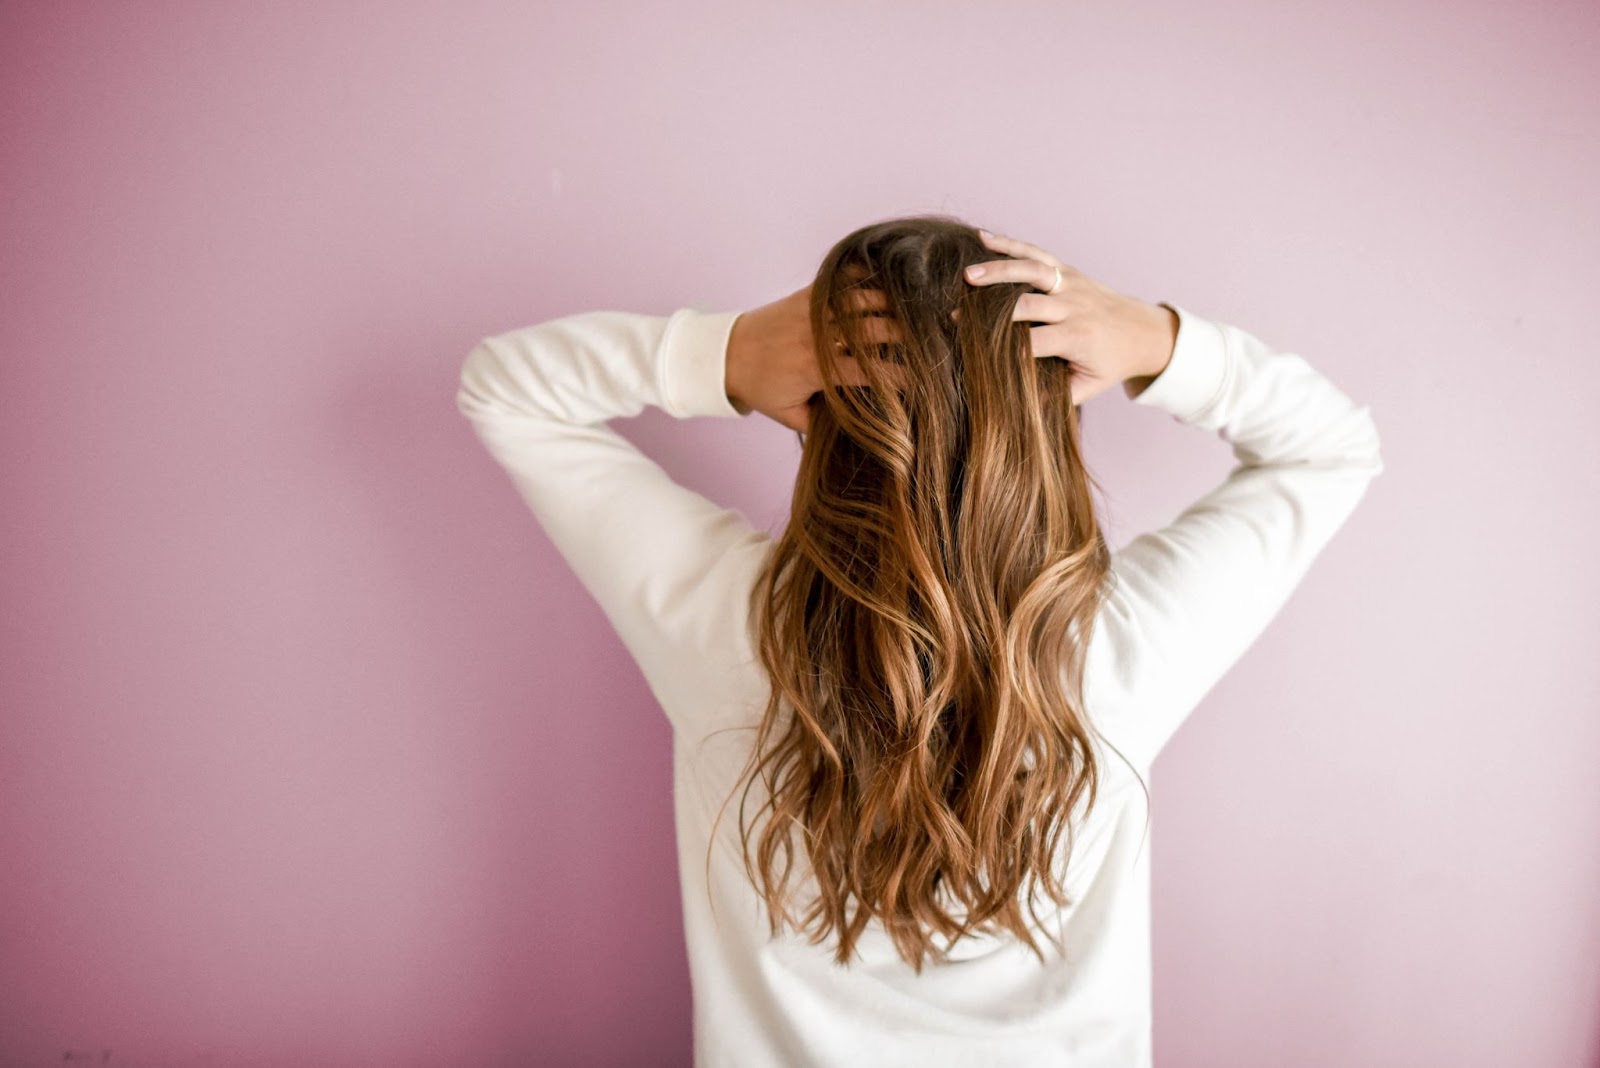 50ELIHKm UQpSIp 5 Tips for Making Your Hair Look More Voluminous